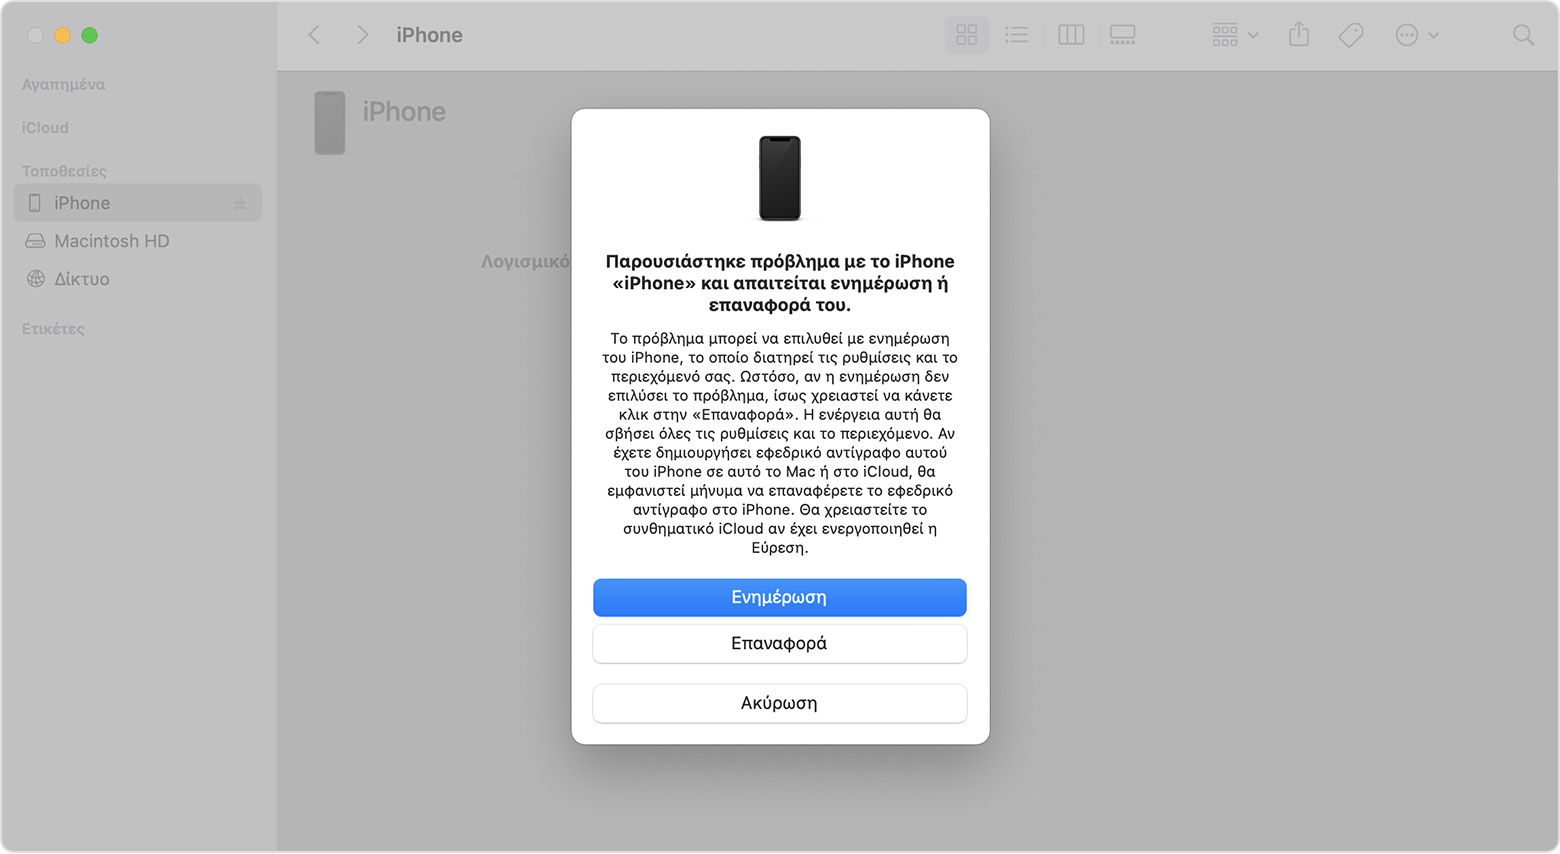 Παράθυρο του Finder σε ένα Mac που εμφανίζει επιλογές για επαναφορά ή ενημέρωση του iPhone.